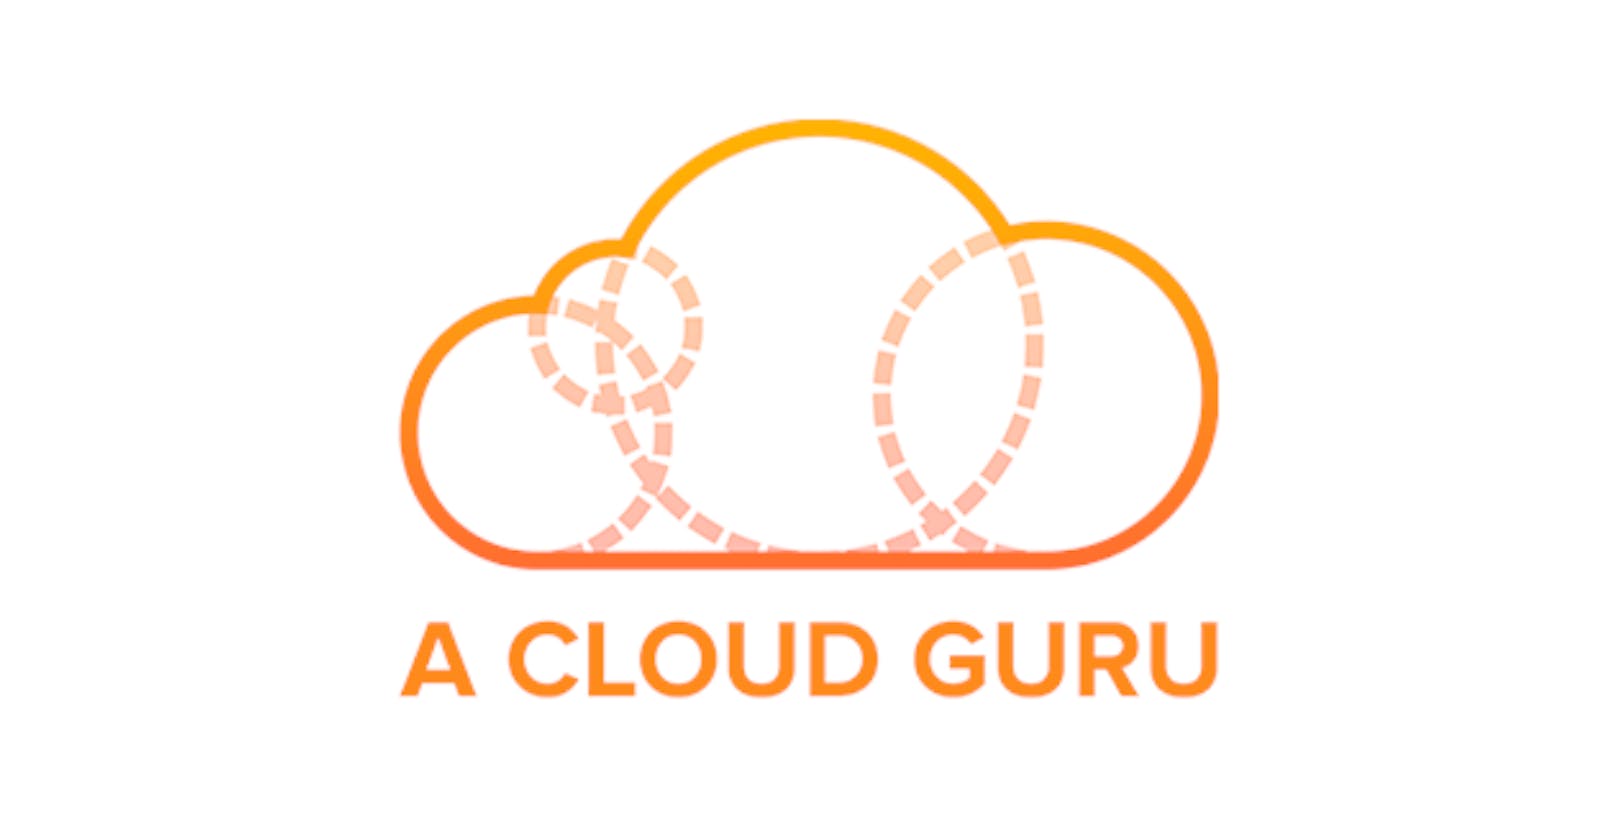 #CloudGuruChallenge - Round 2